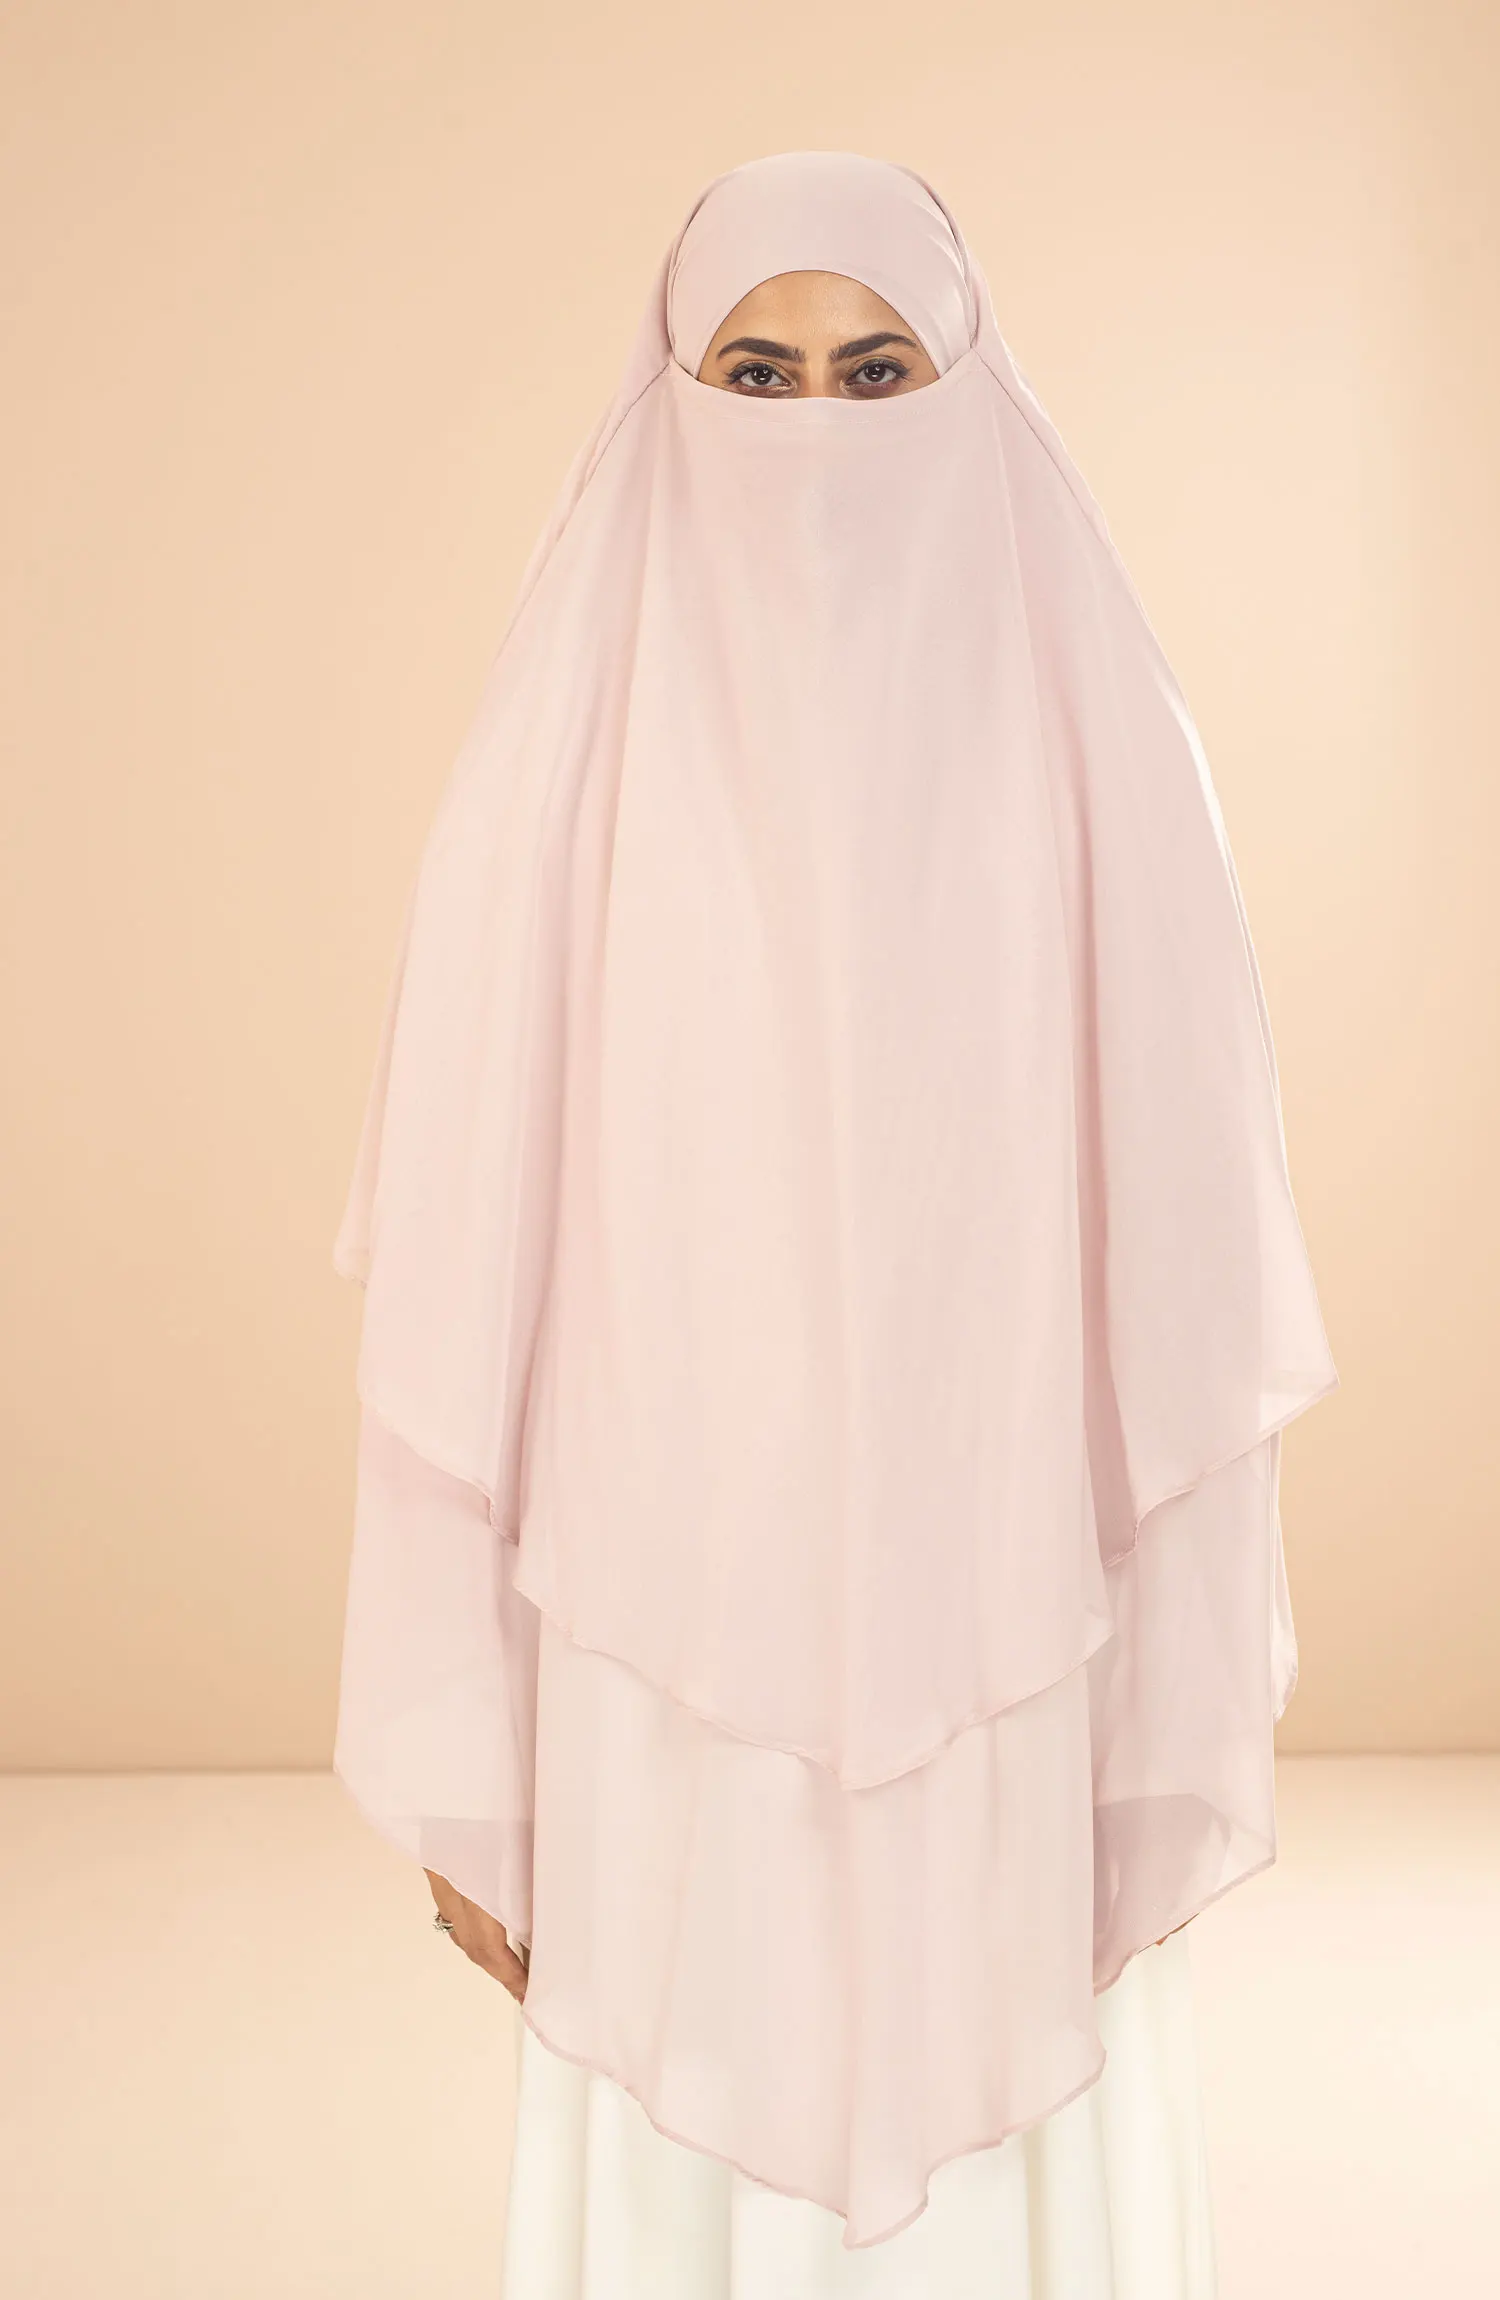 Black Camels Shanaz Khimar Hijab Collection - SH 07